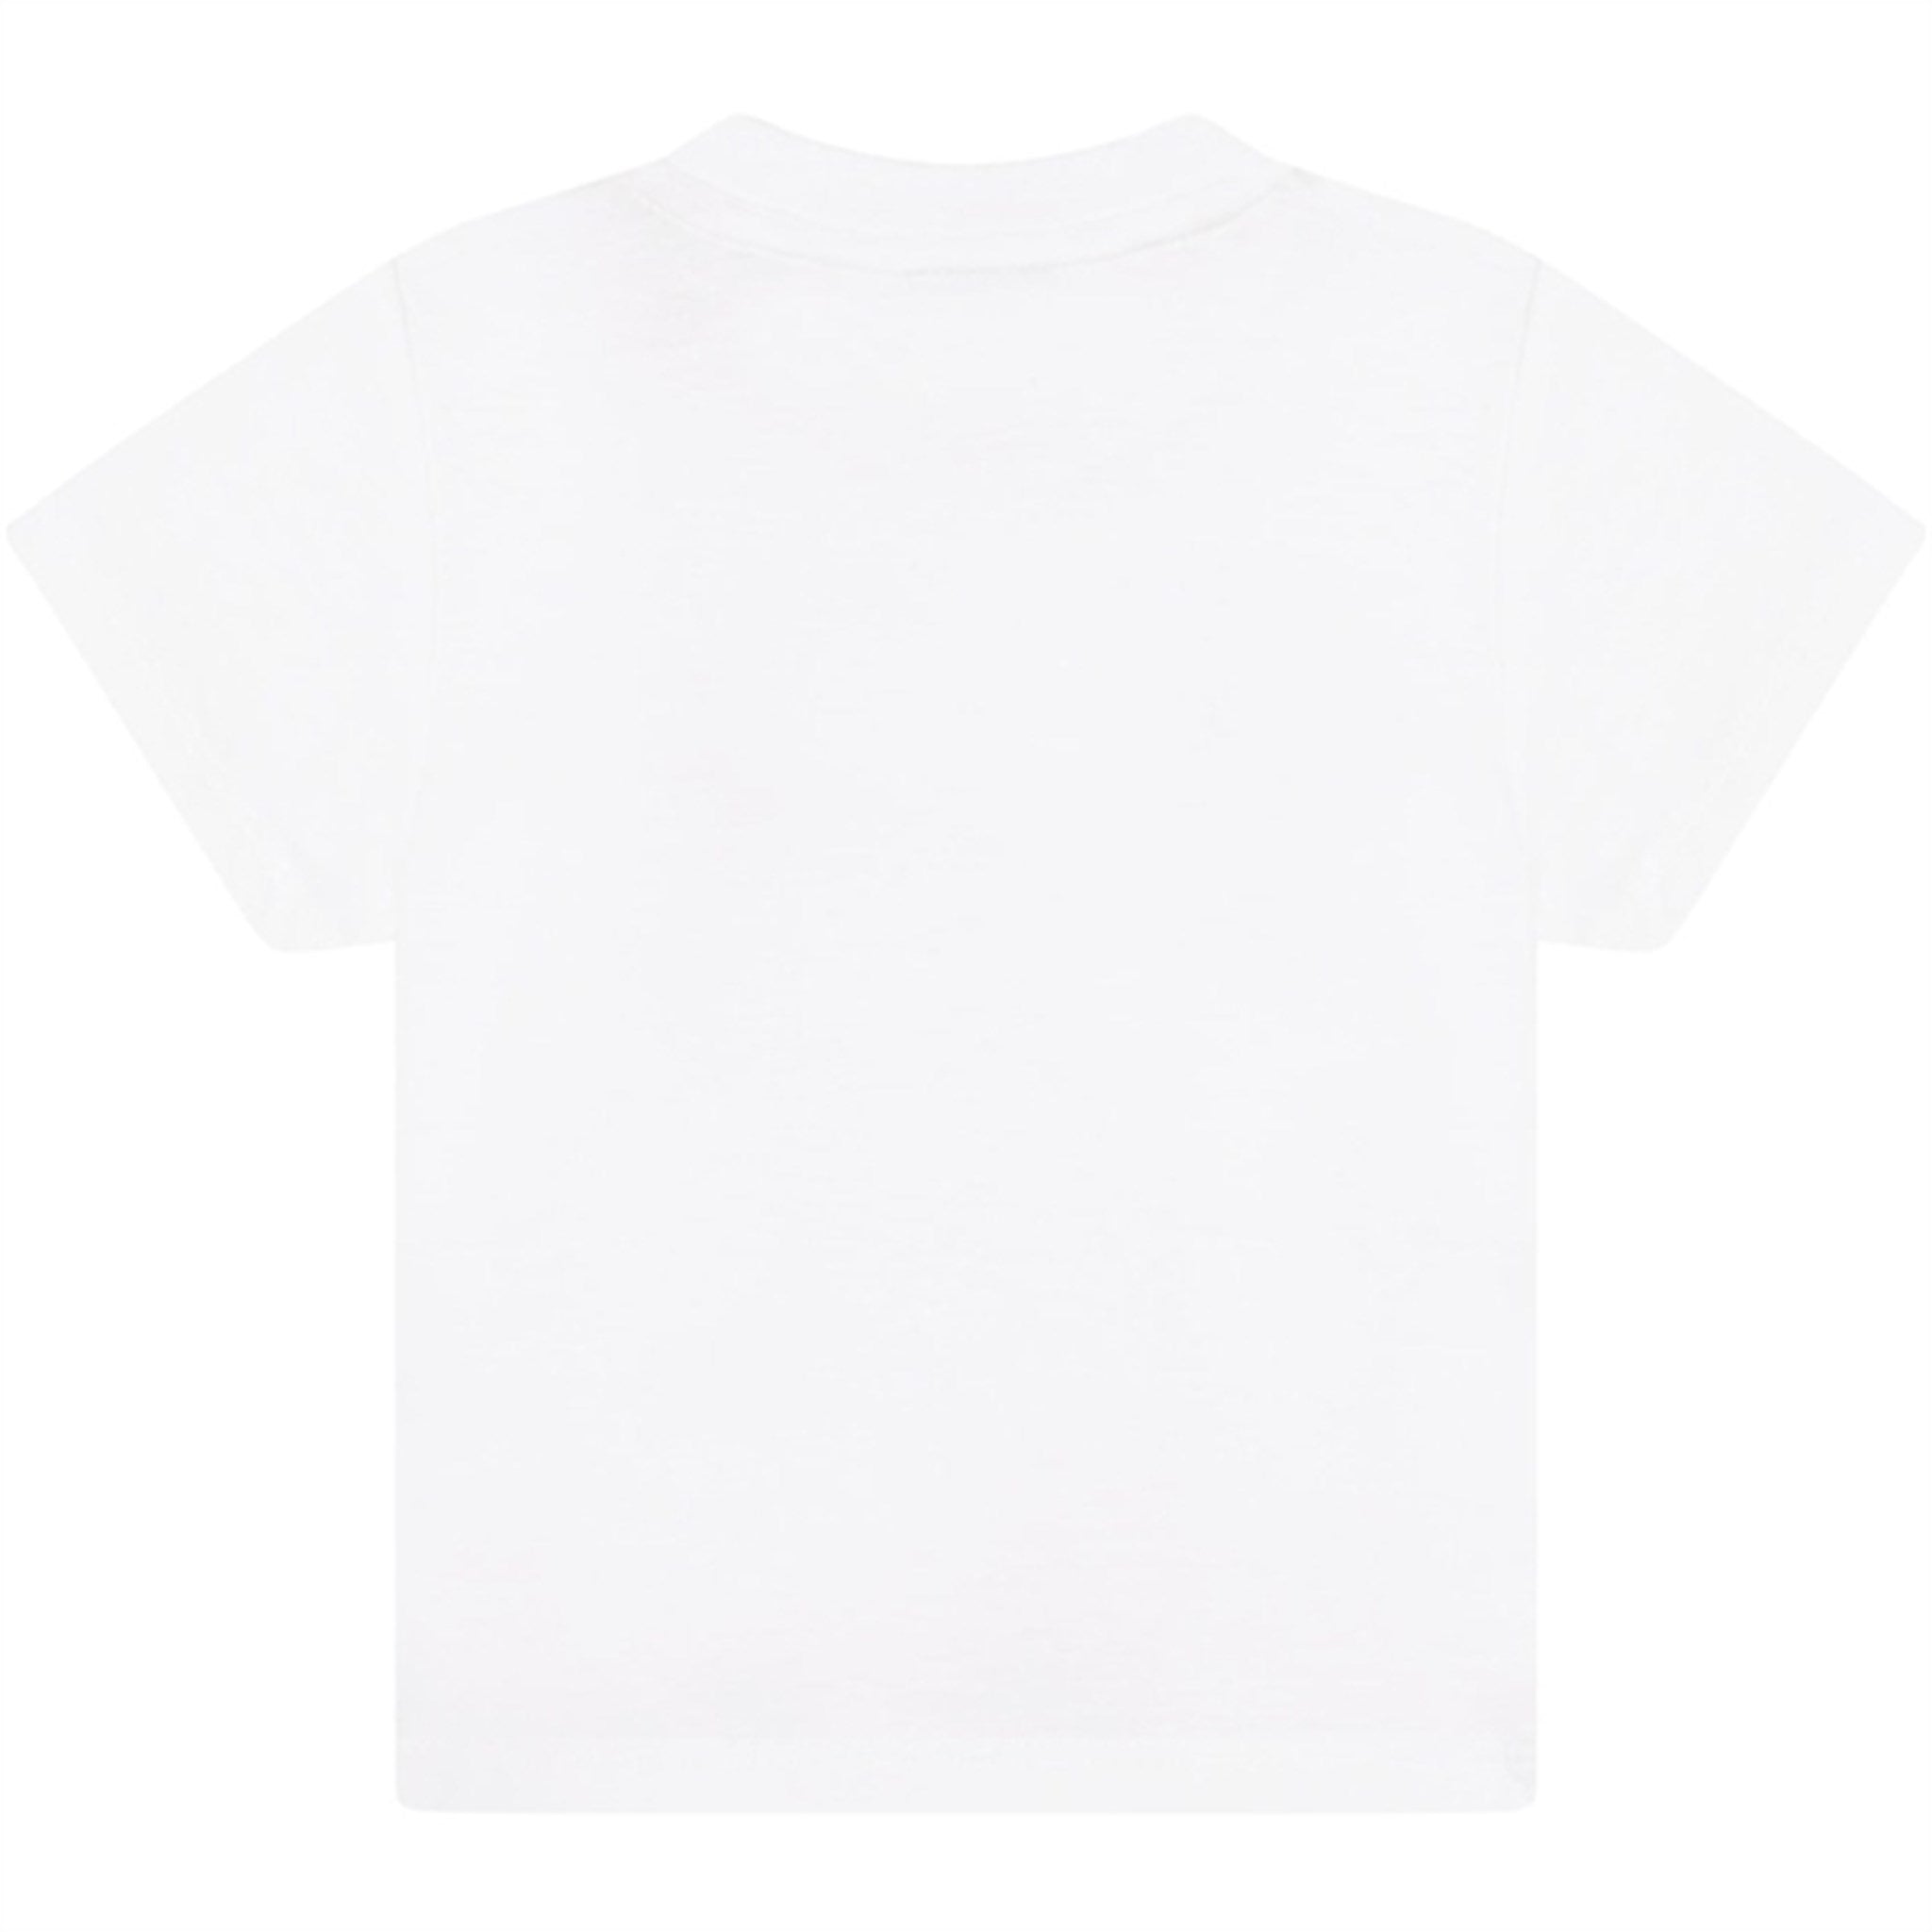 Hugo Boss Bebis T-shirt White 2